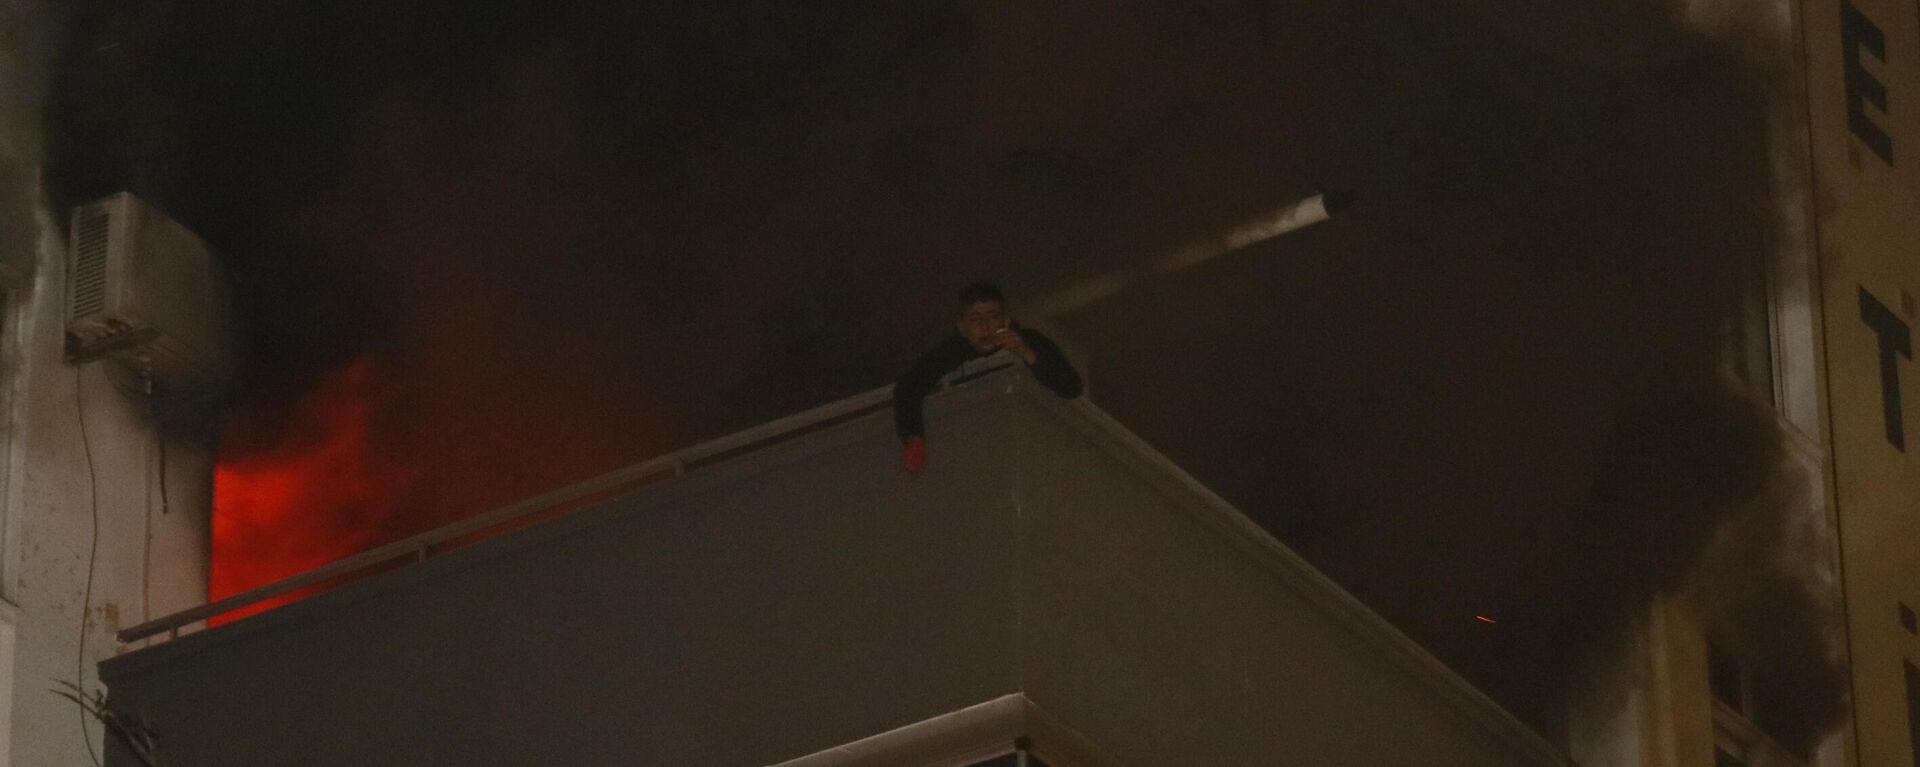 Adana’da sinir krizi geçiren 19 yaşındaki genç oturdukları apartman dairesini ateşe verip balkona çıkarak sigara içti. Bir süre sonra dumanlardan etkilenen genç itfaiye tarafından kurtarıldı. - Sputnik Türkiye, 1920, 01.11.2021